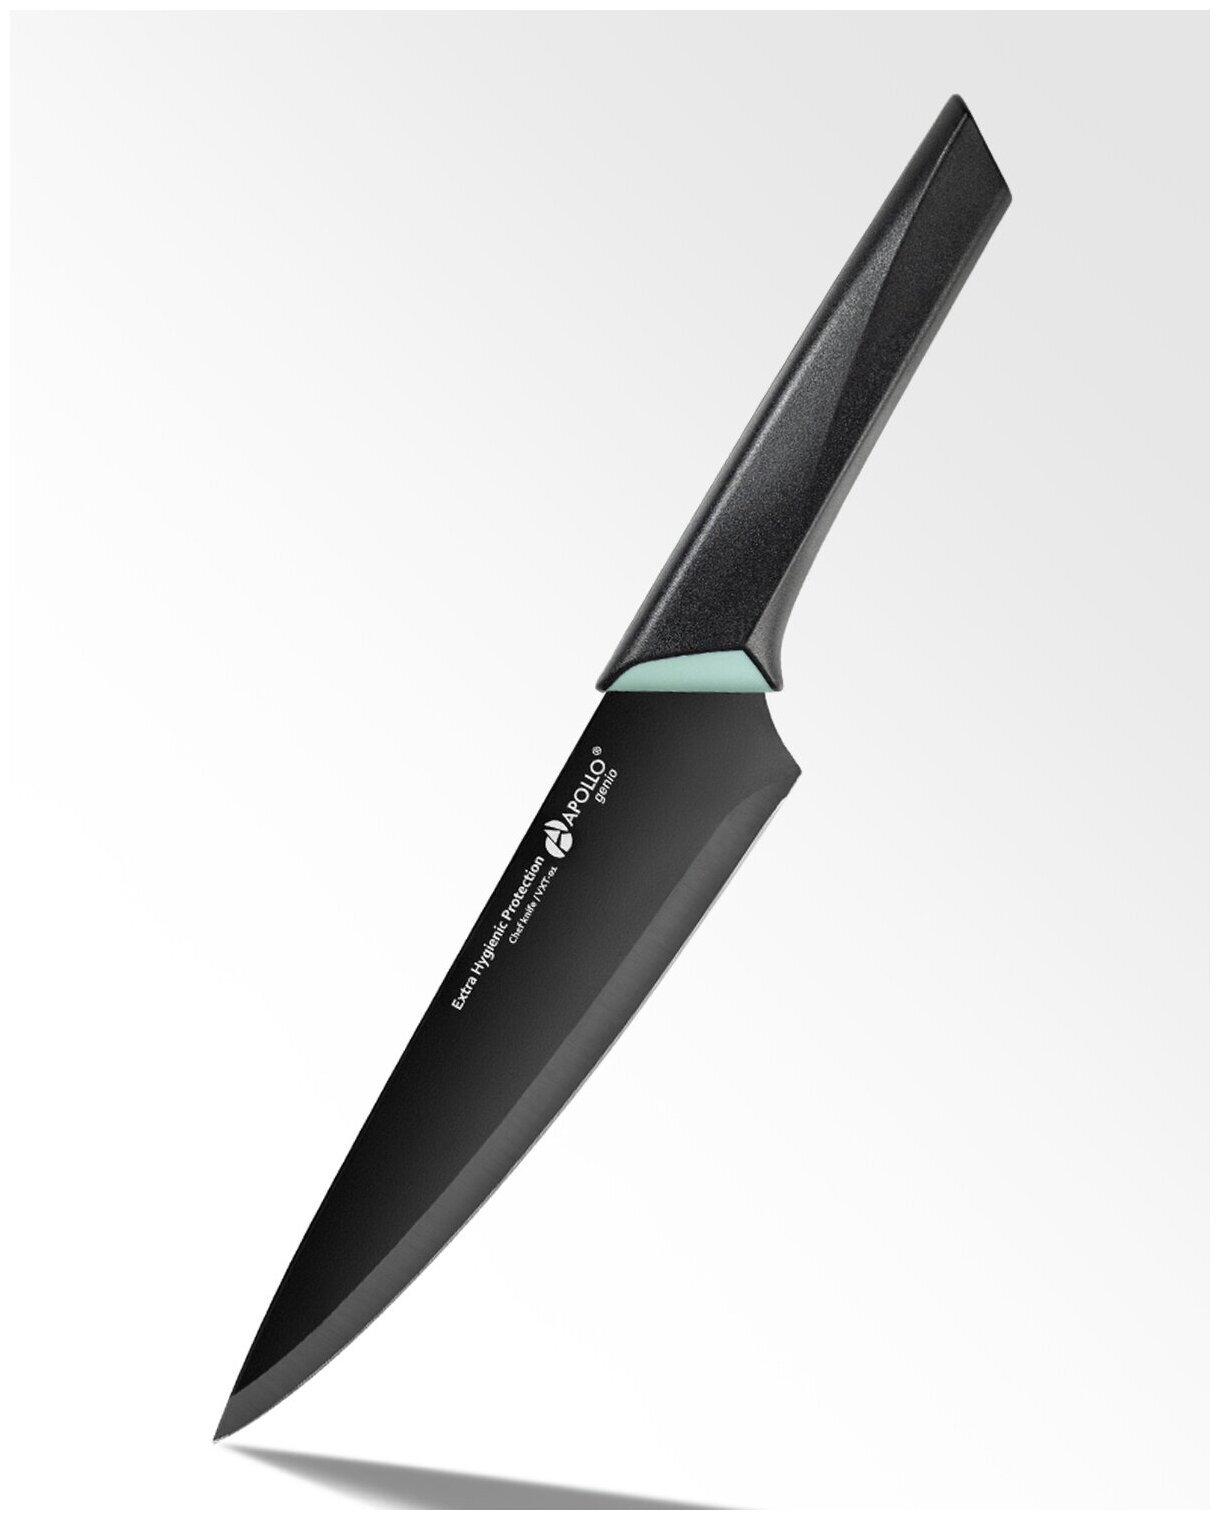 Нож кухонный универсальный для измельчения овощей и мяса, из нержавеющей стали с покрытием, длина лезвия 17,5 см